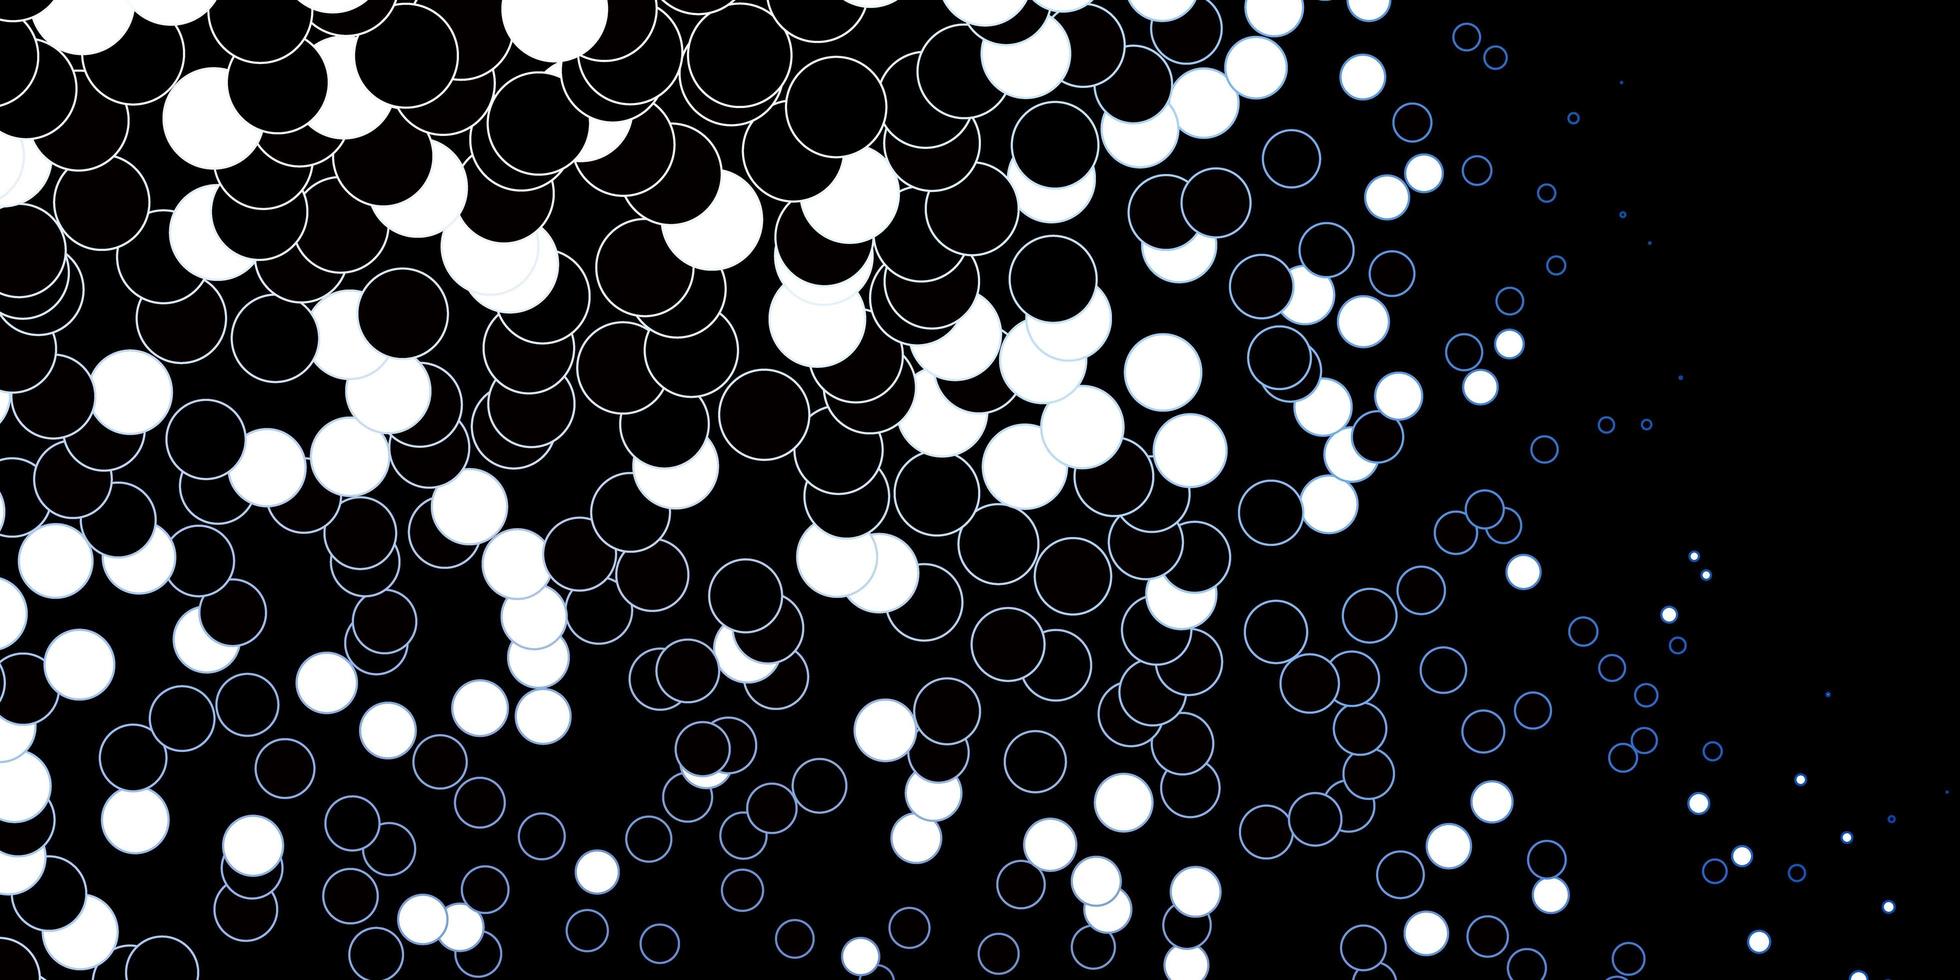 fundo vector azul escuro com bolhas.